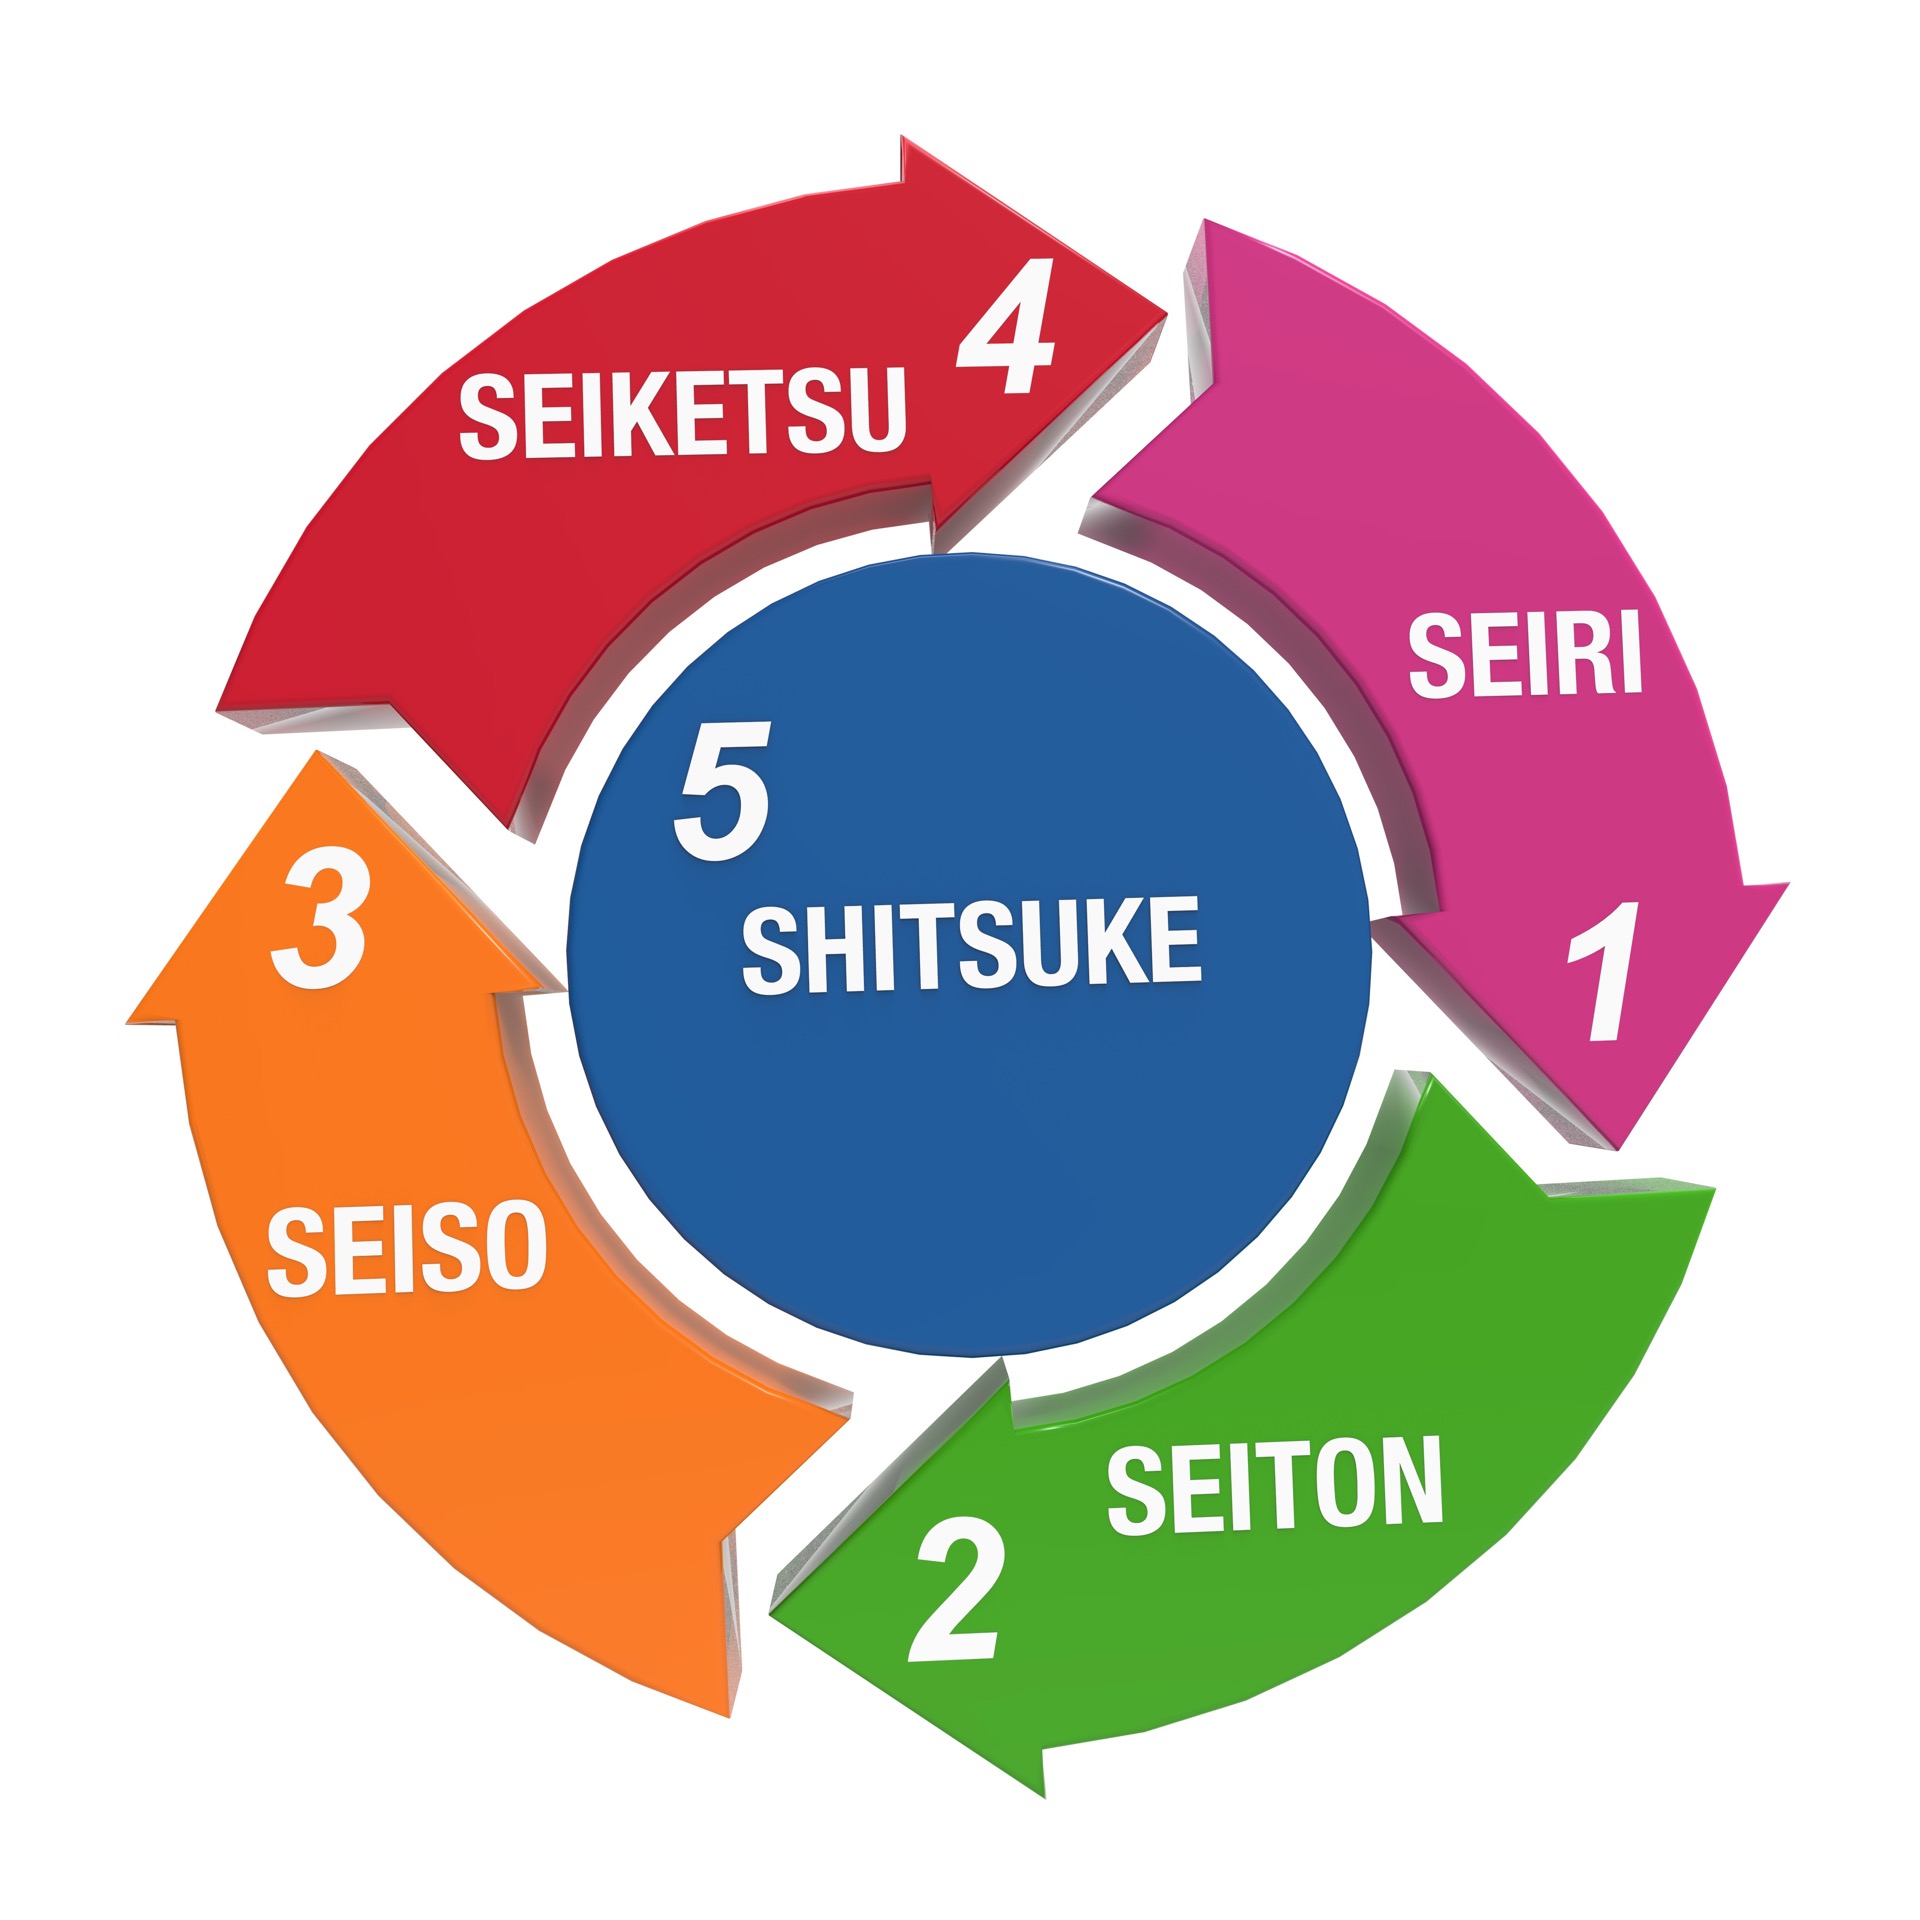 Seiri (Clasificación), Seiton (Orden), Seiso (Limpieza), Seiketsu (Estandarización) y Shitsuke (Disciplina), los pilares del método de las 5S japonés.